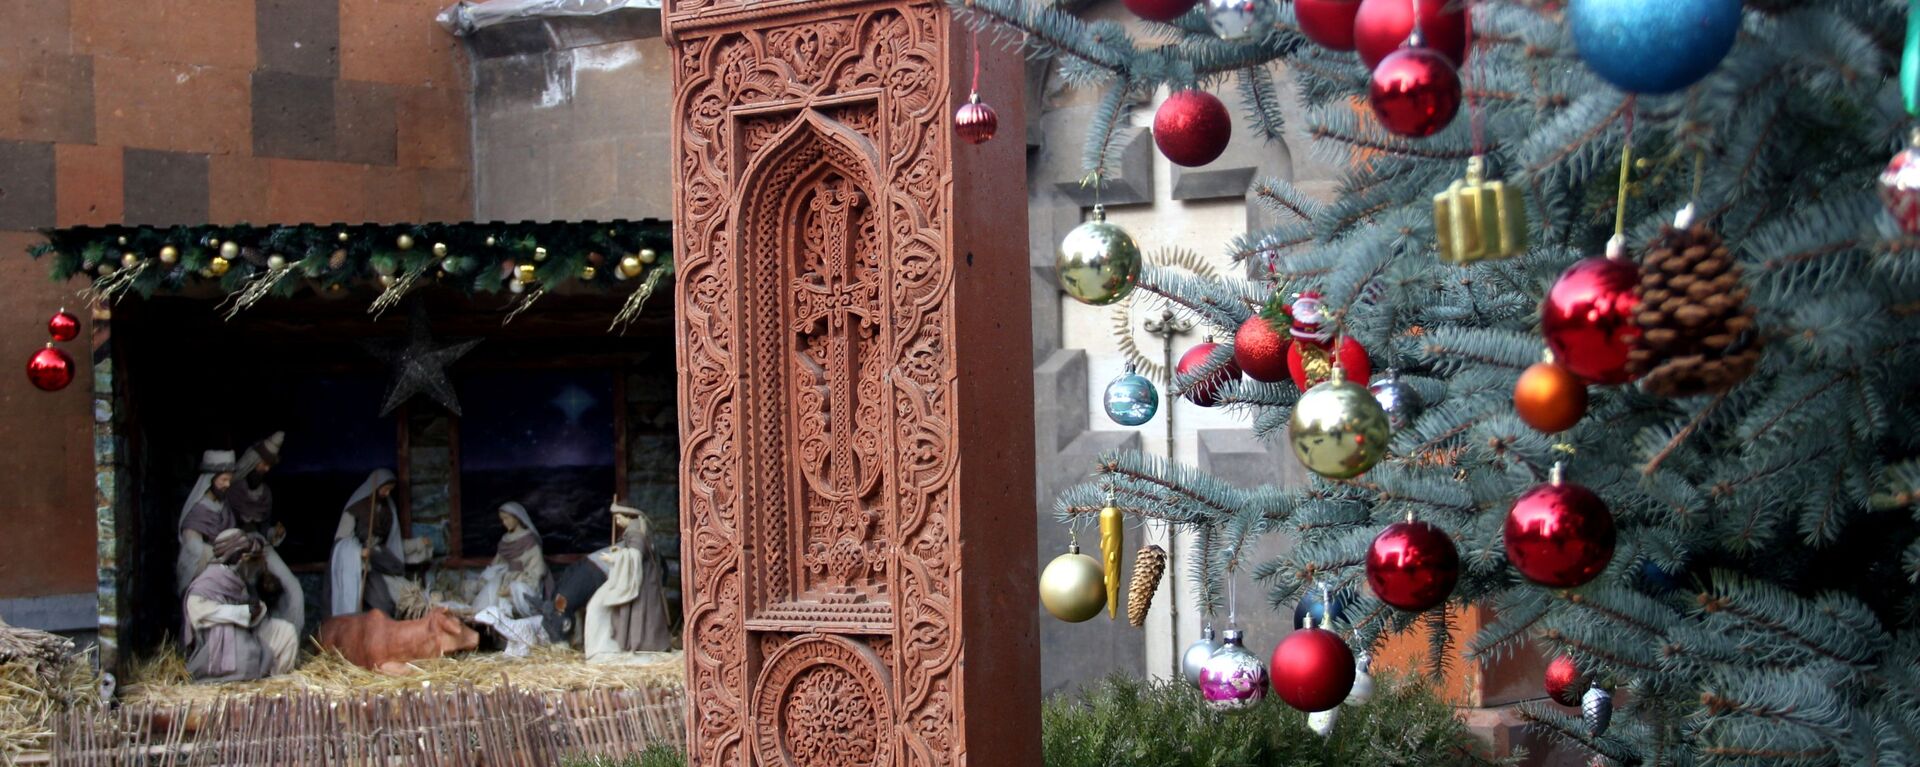 Рождественское оформление во дворе церкви Святой Богородицы Зоравор (6 января 2019). Ереван - Sputnik Армения, 1920, 21.11.2021